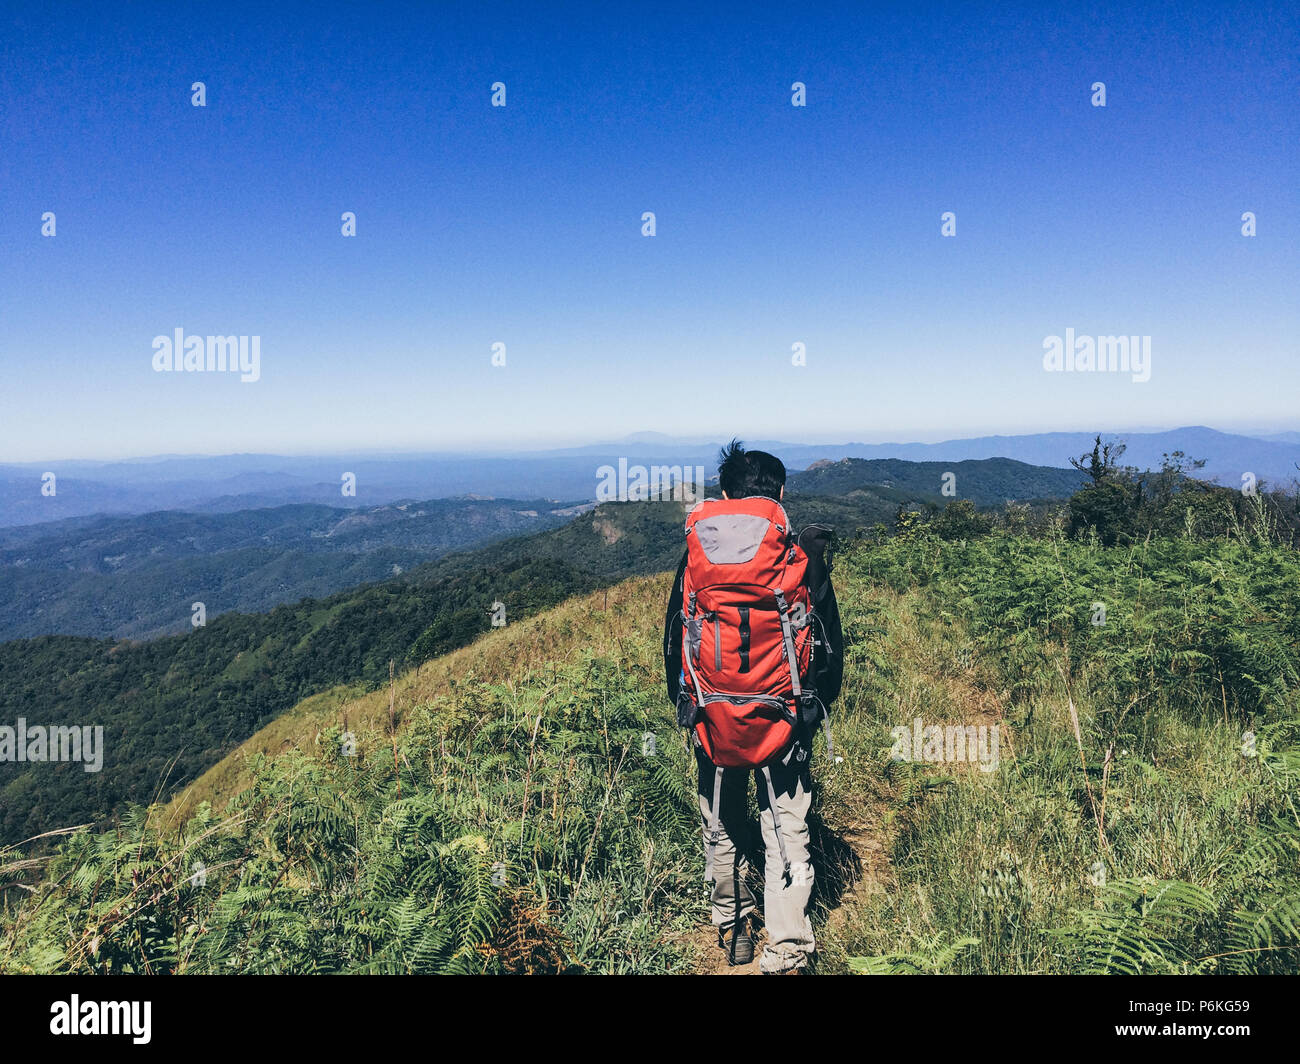 Escursionismo uomo con zaino sulle montagne, Stile di vita viaggio concetto di successo avventura vacanze attive outdoor sport alpinismo panorama al tramonto Foto Stock